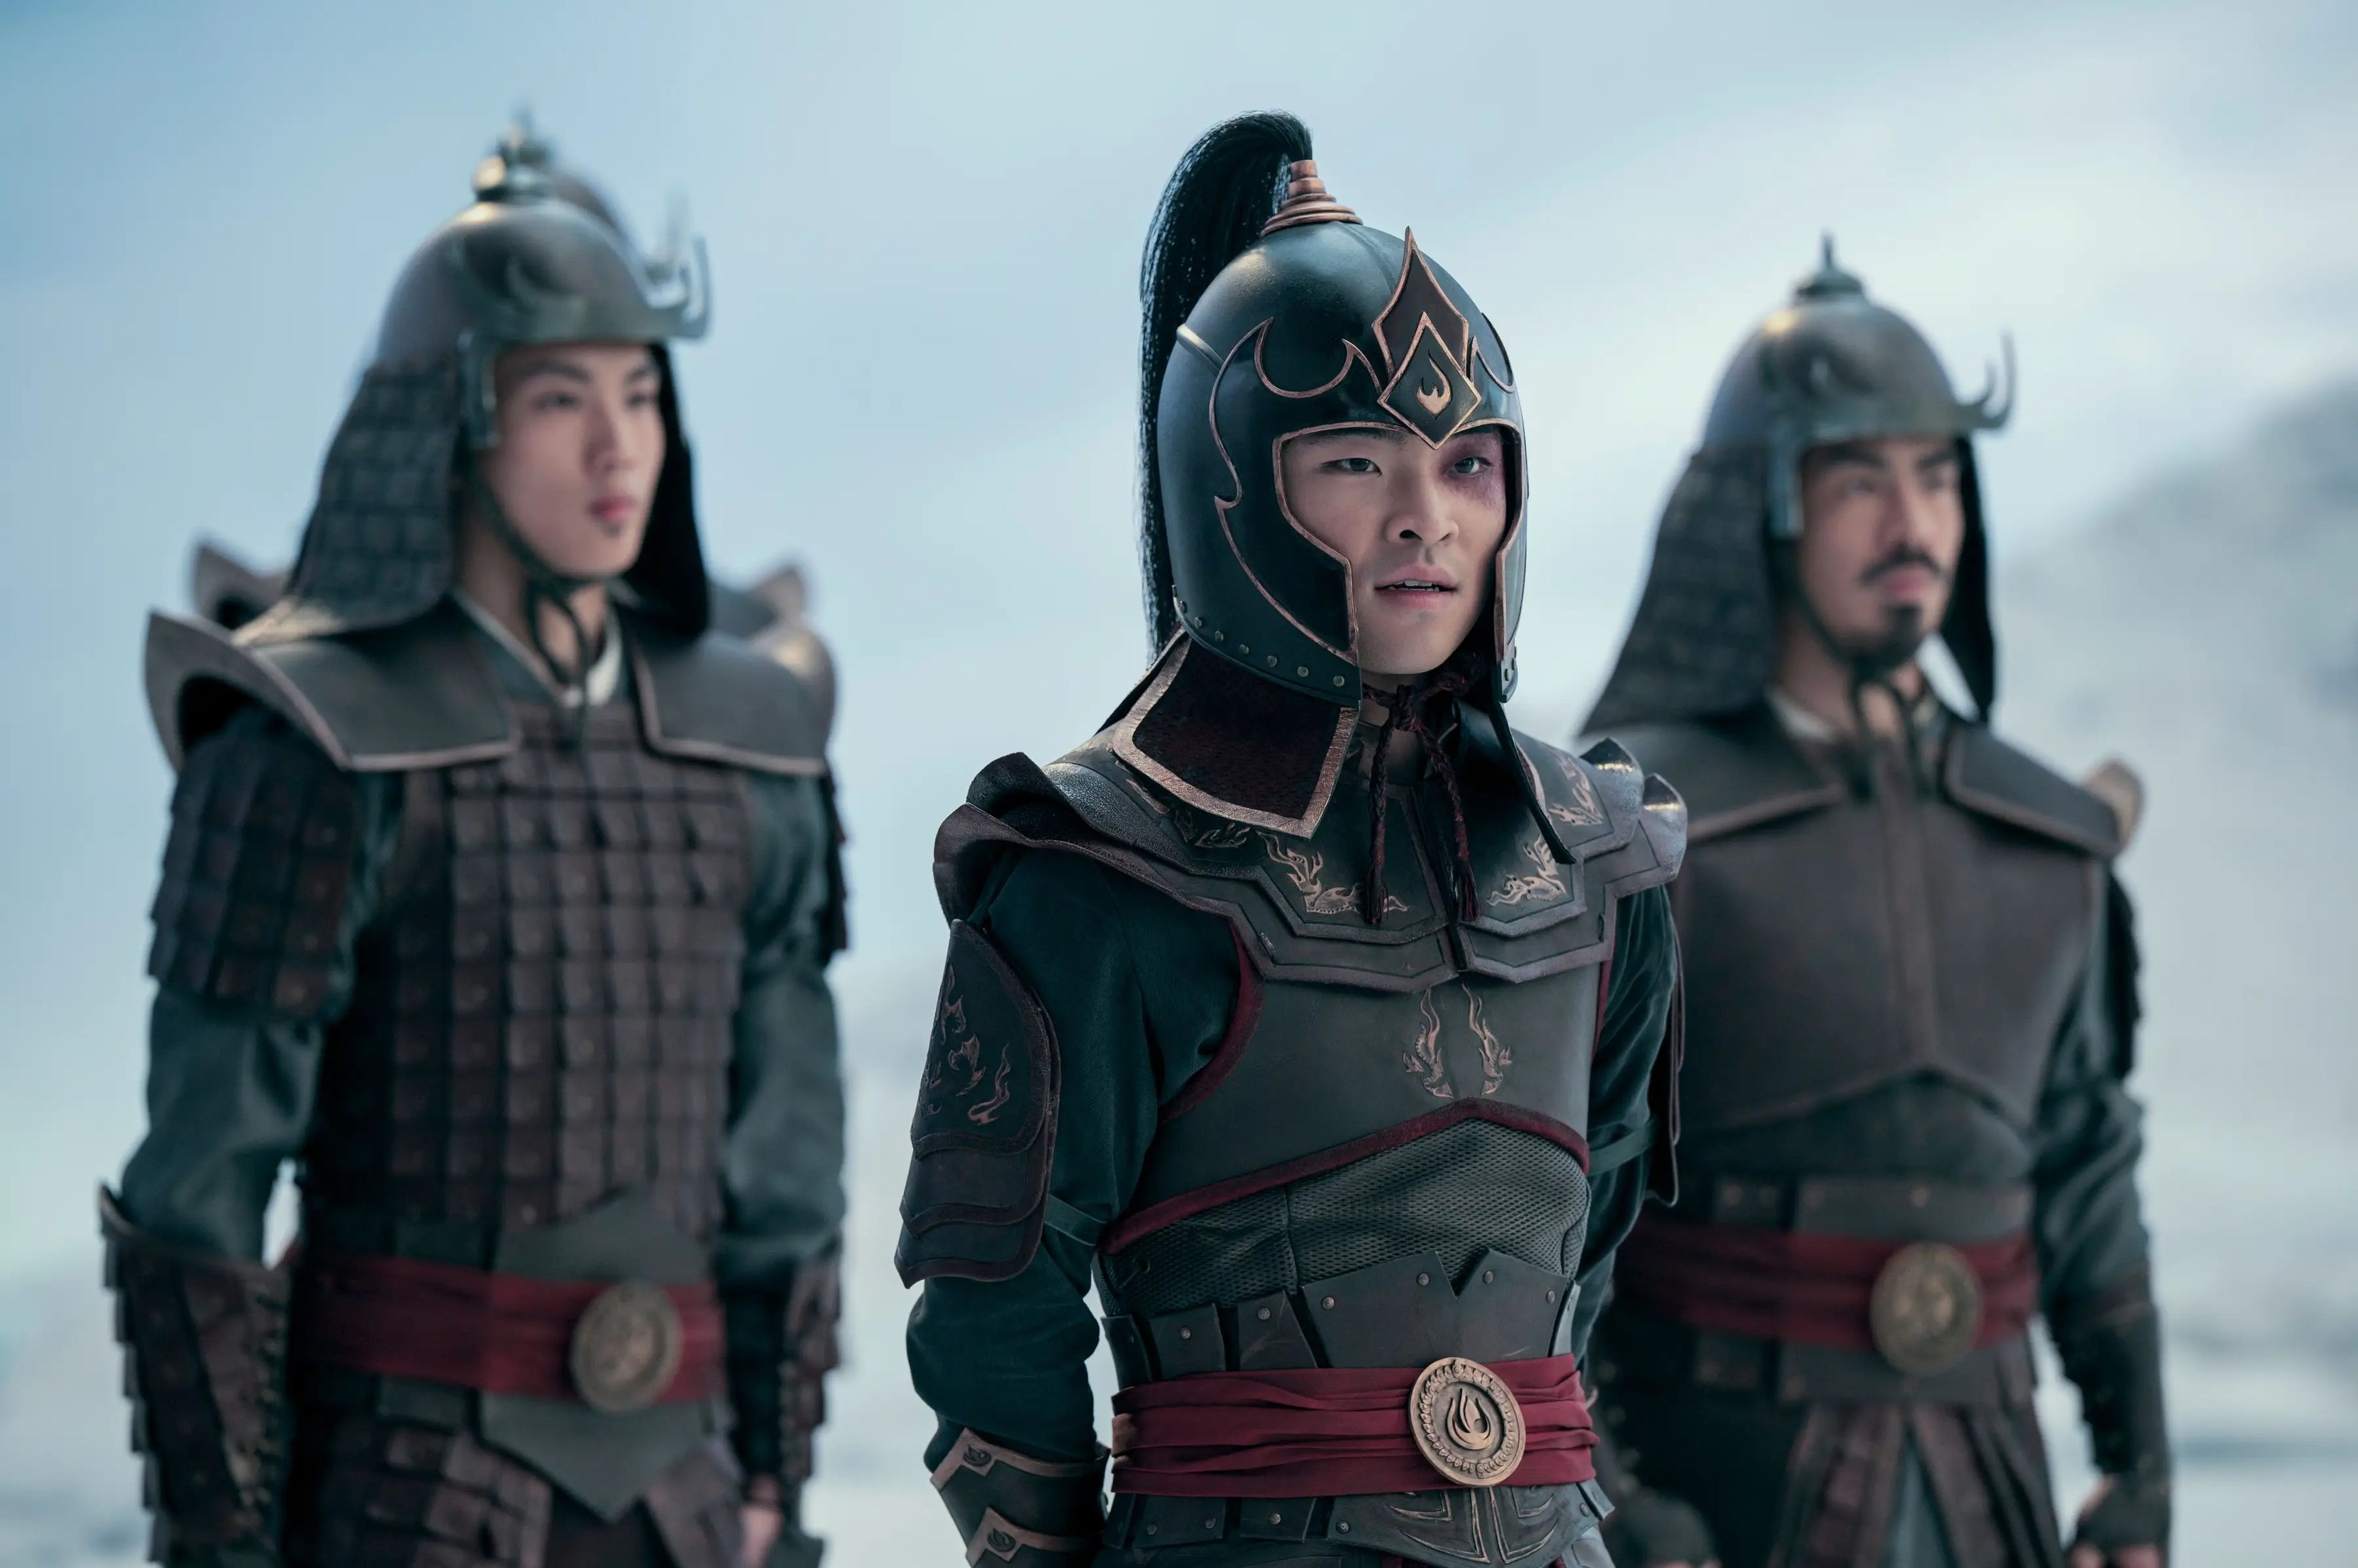 Dallas Liu como el príncipe Zuko en "Avatar: The Last Airbender".